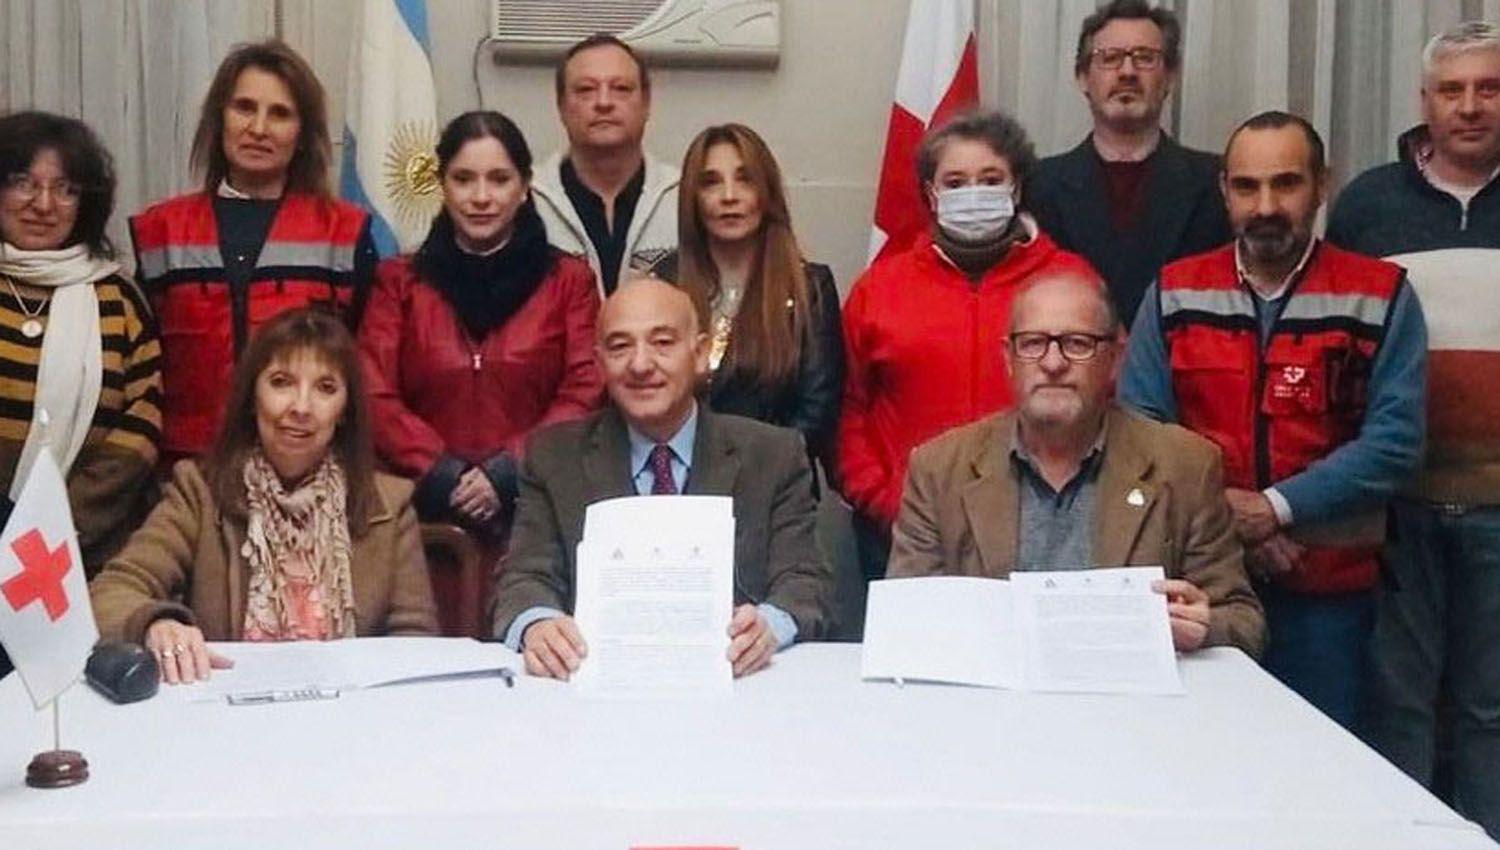 La Cruz Roja lanzoacute un concurso de ideas para refuncionalizar su sede